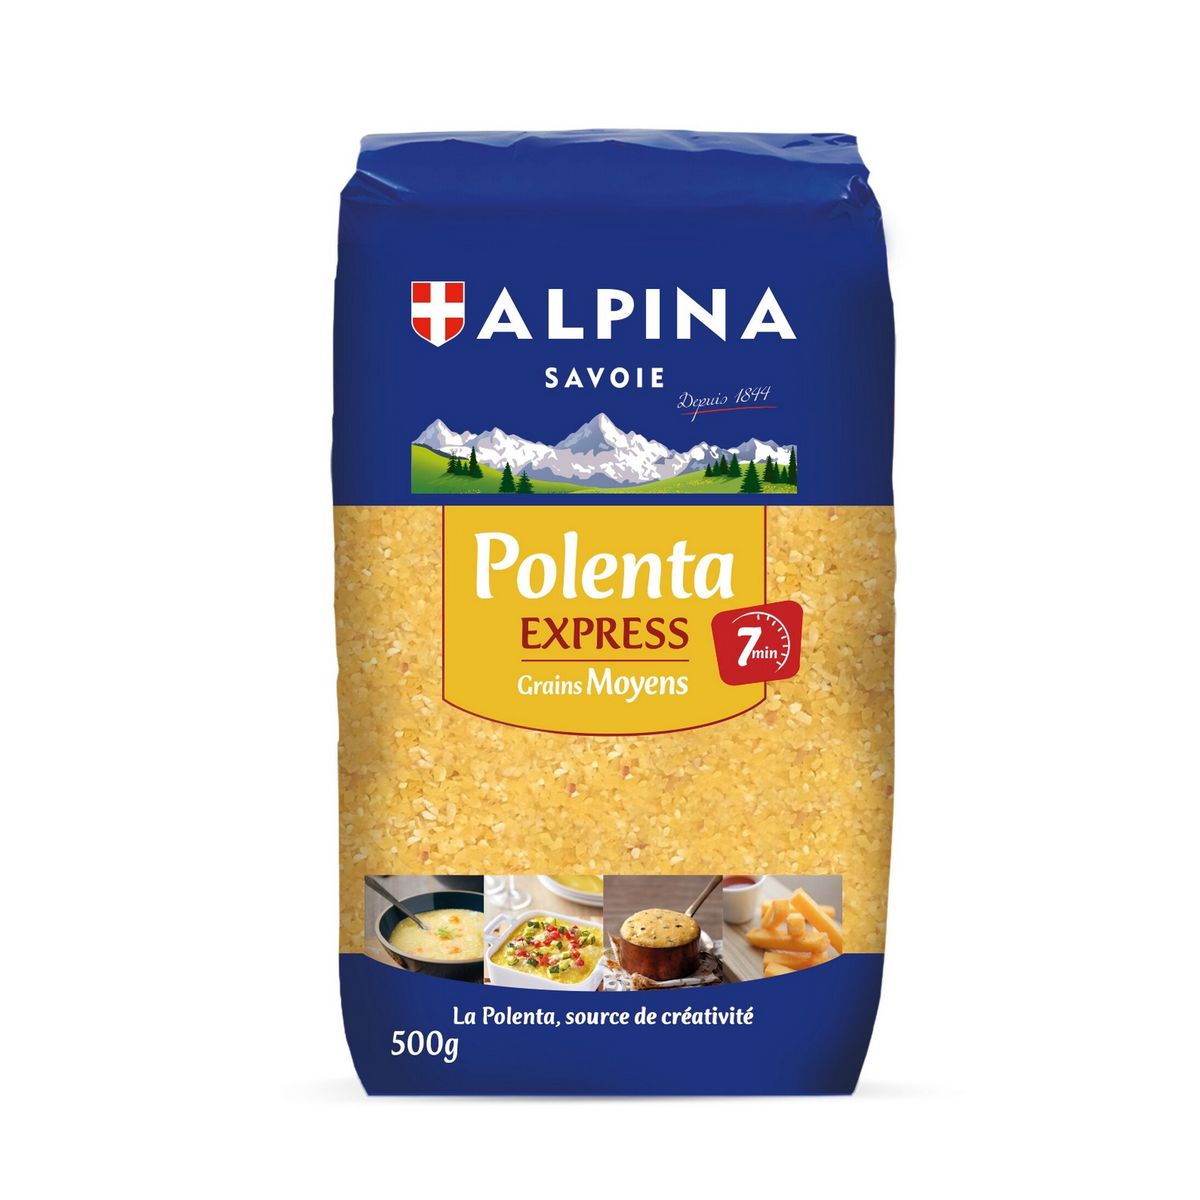 ALPINA SAVOIE Polenta express 7min grains moyen sans gluten 500g